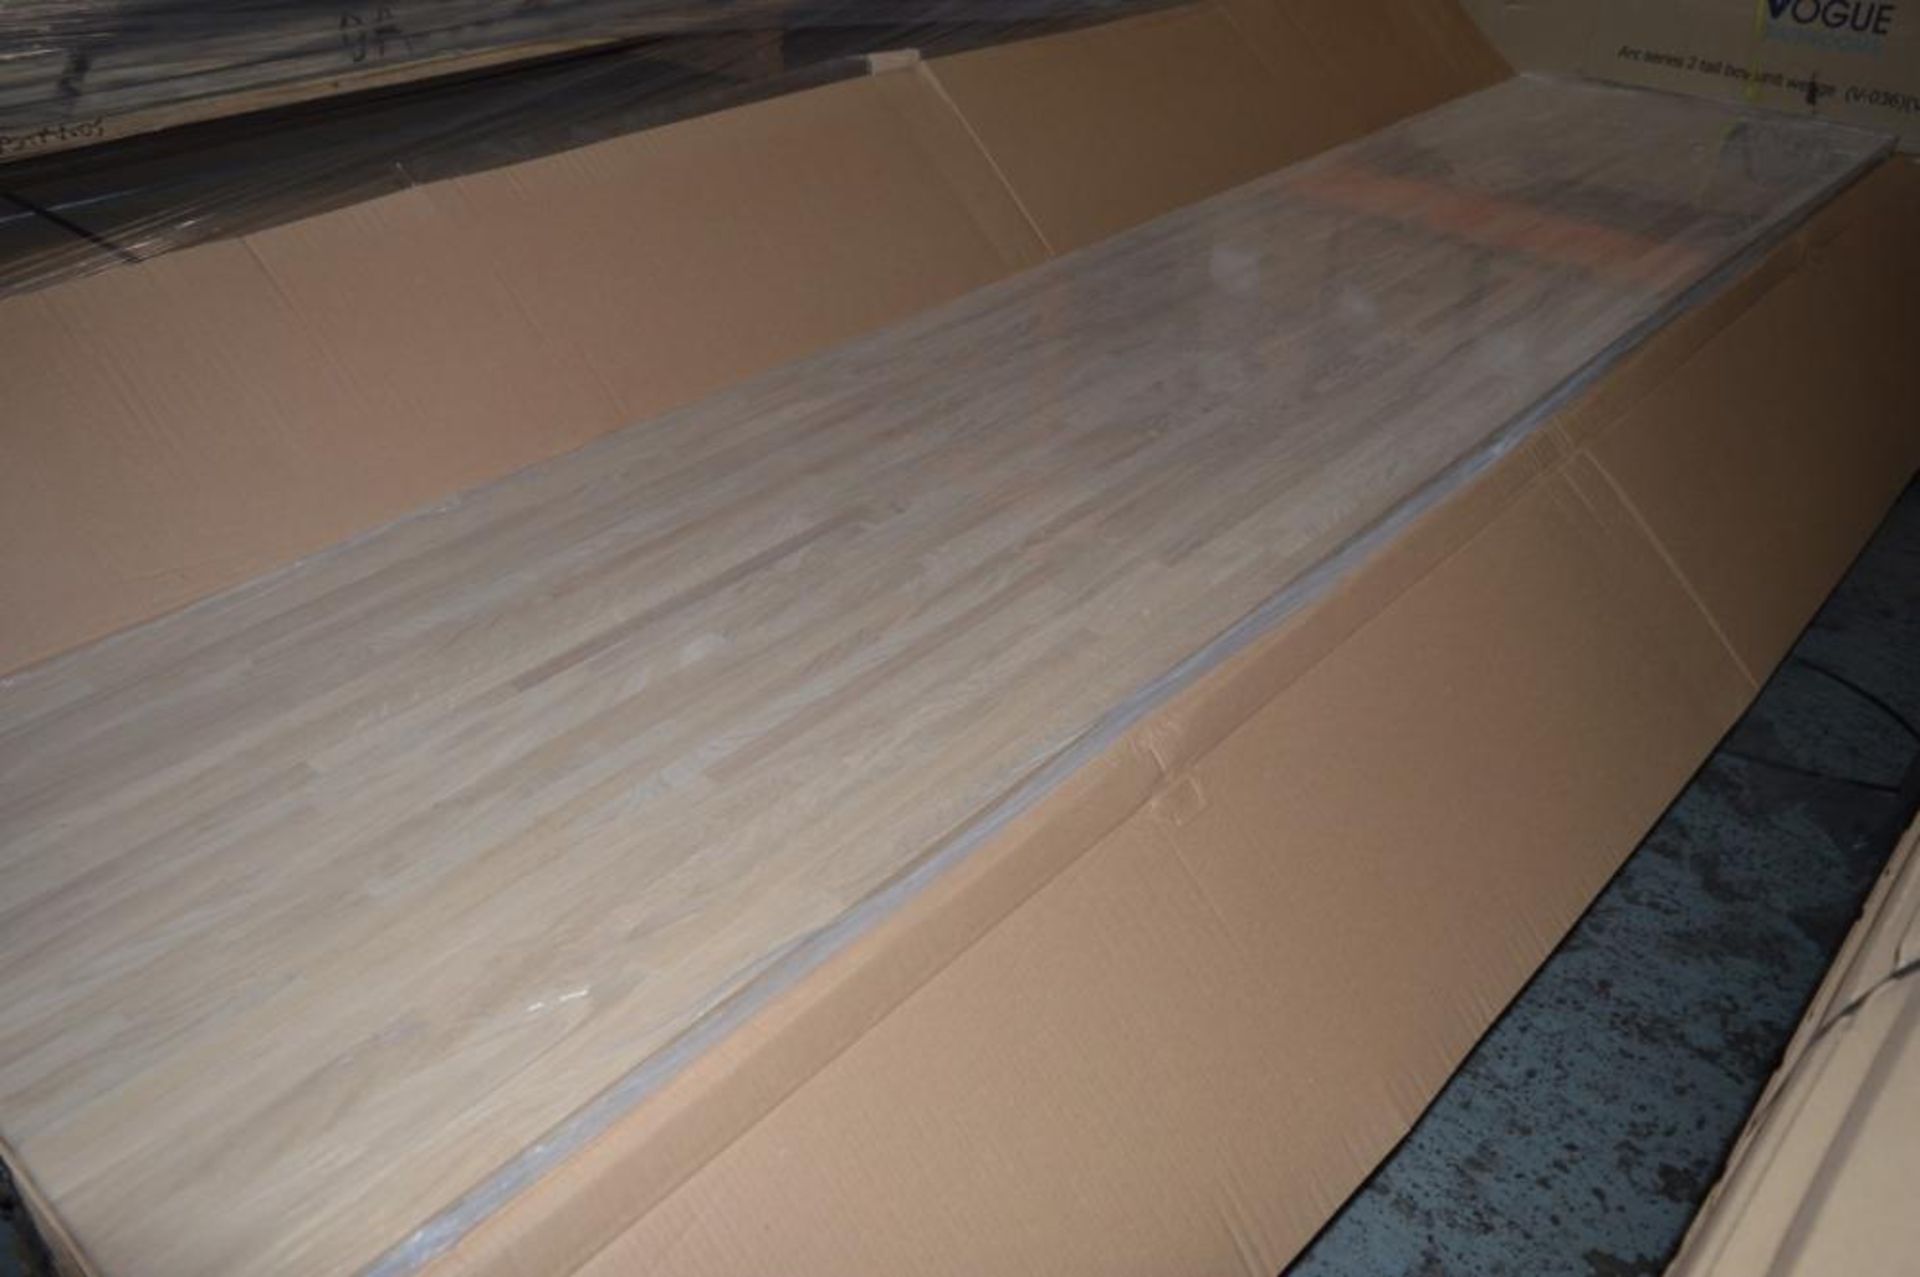 1 x Solid Wood Kitchen Worktop - OAK - Oak Blockwood Kitchen Worktop - Size: 3000 x 900 x 32mm - Unt - Image 3 of 6